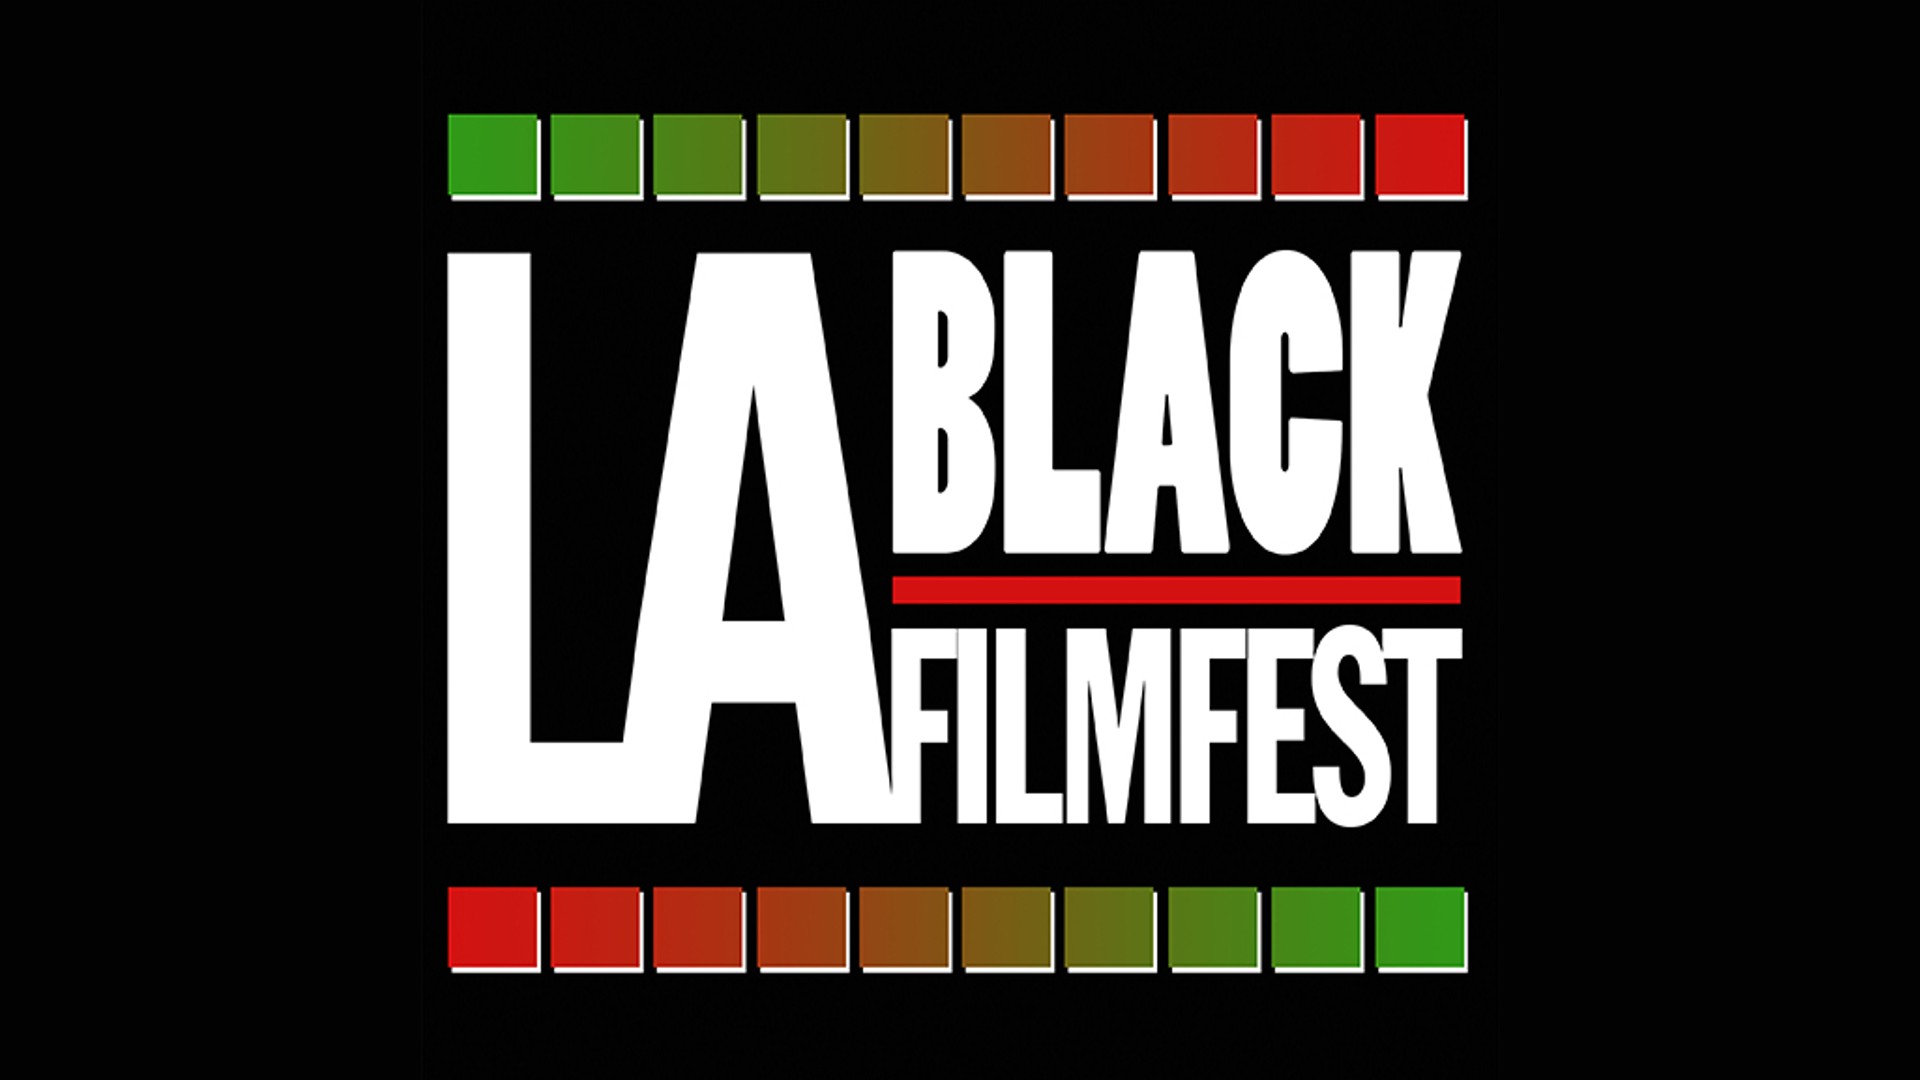 LA Black Film Festival